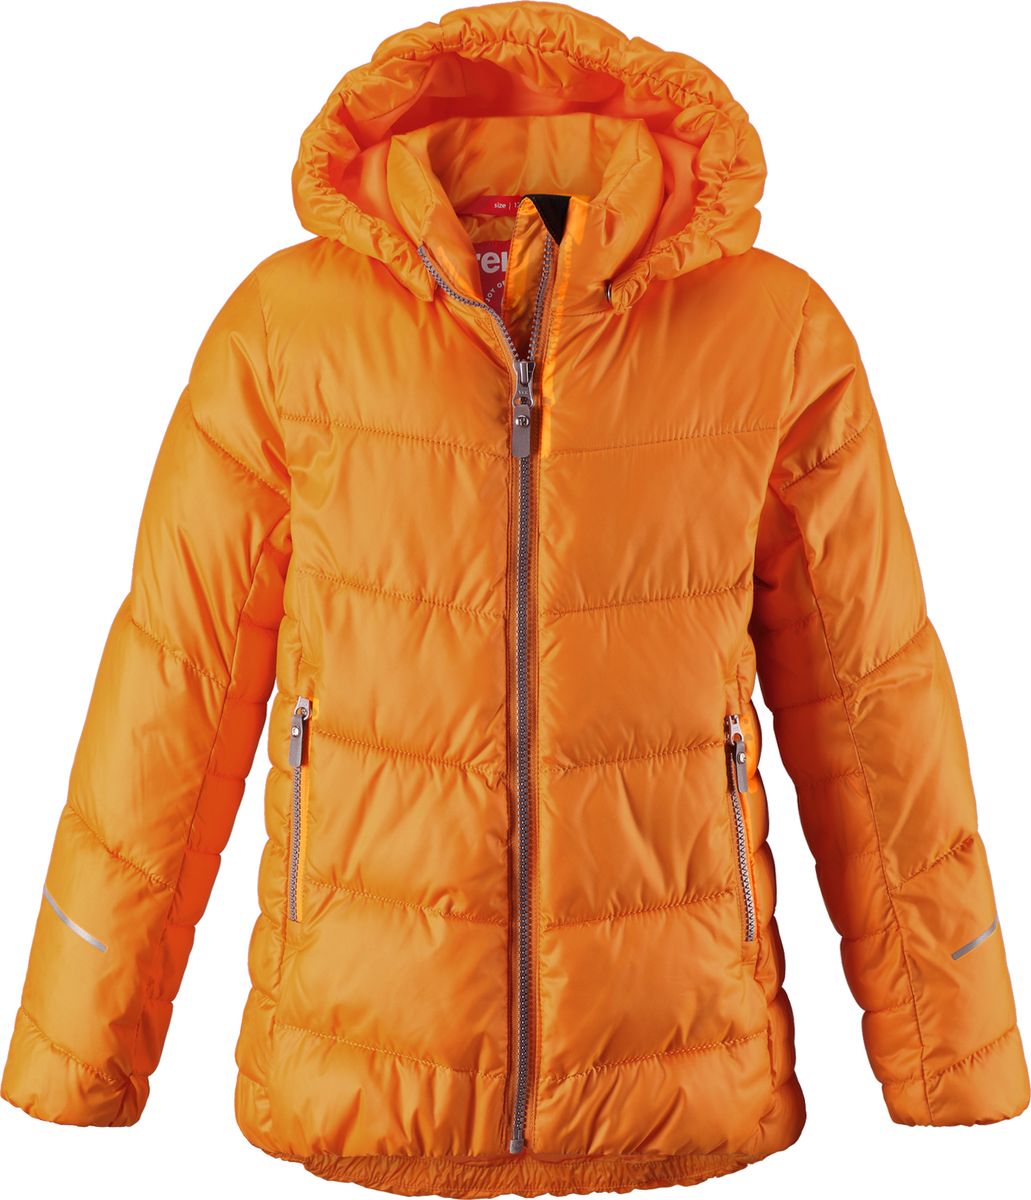 Куртка для девочки Reima Malla, цвет: оранжевый. 5313442440. Размер 140